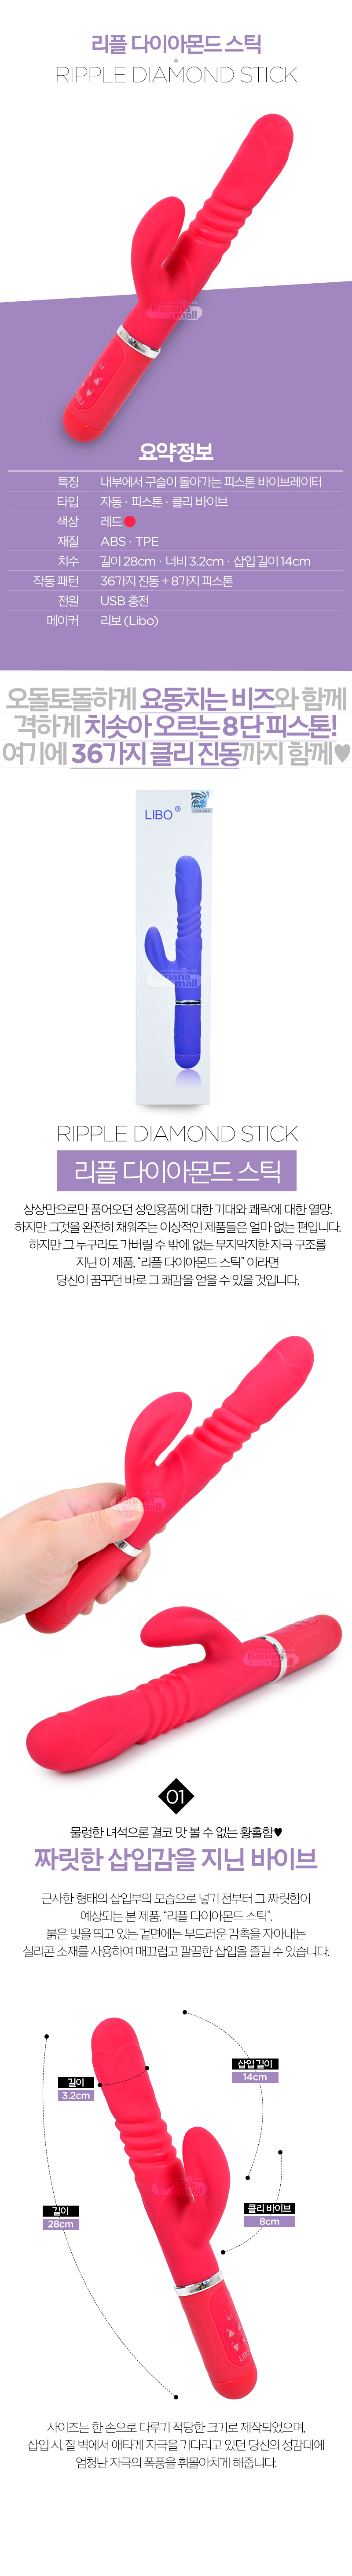 [36단 진동 + 8단 피스톤] 리플 다이아몬드 스틱(Ripple Diamond Stick)